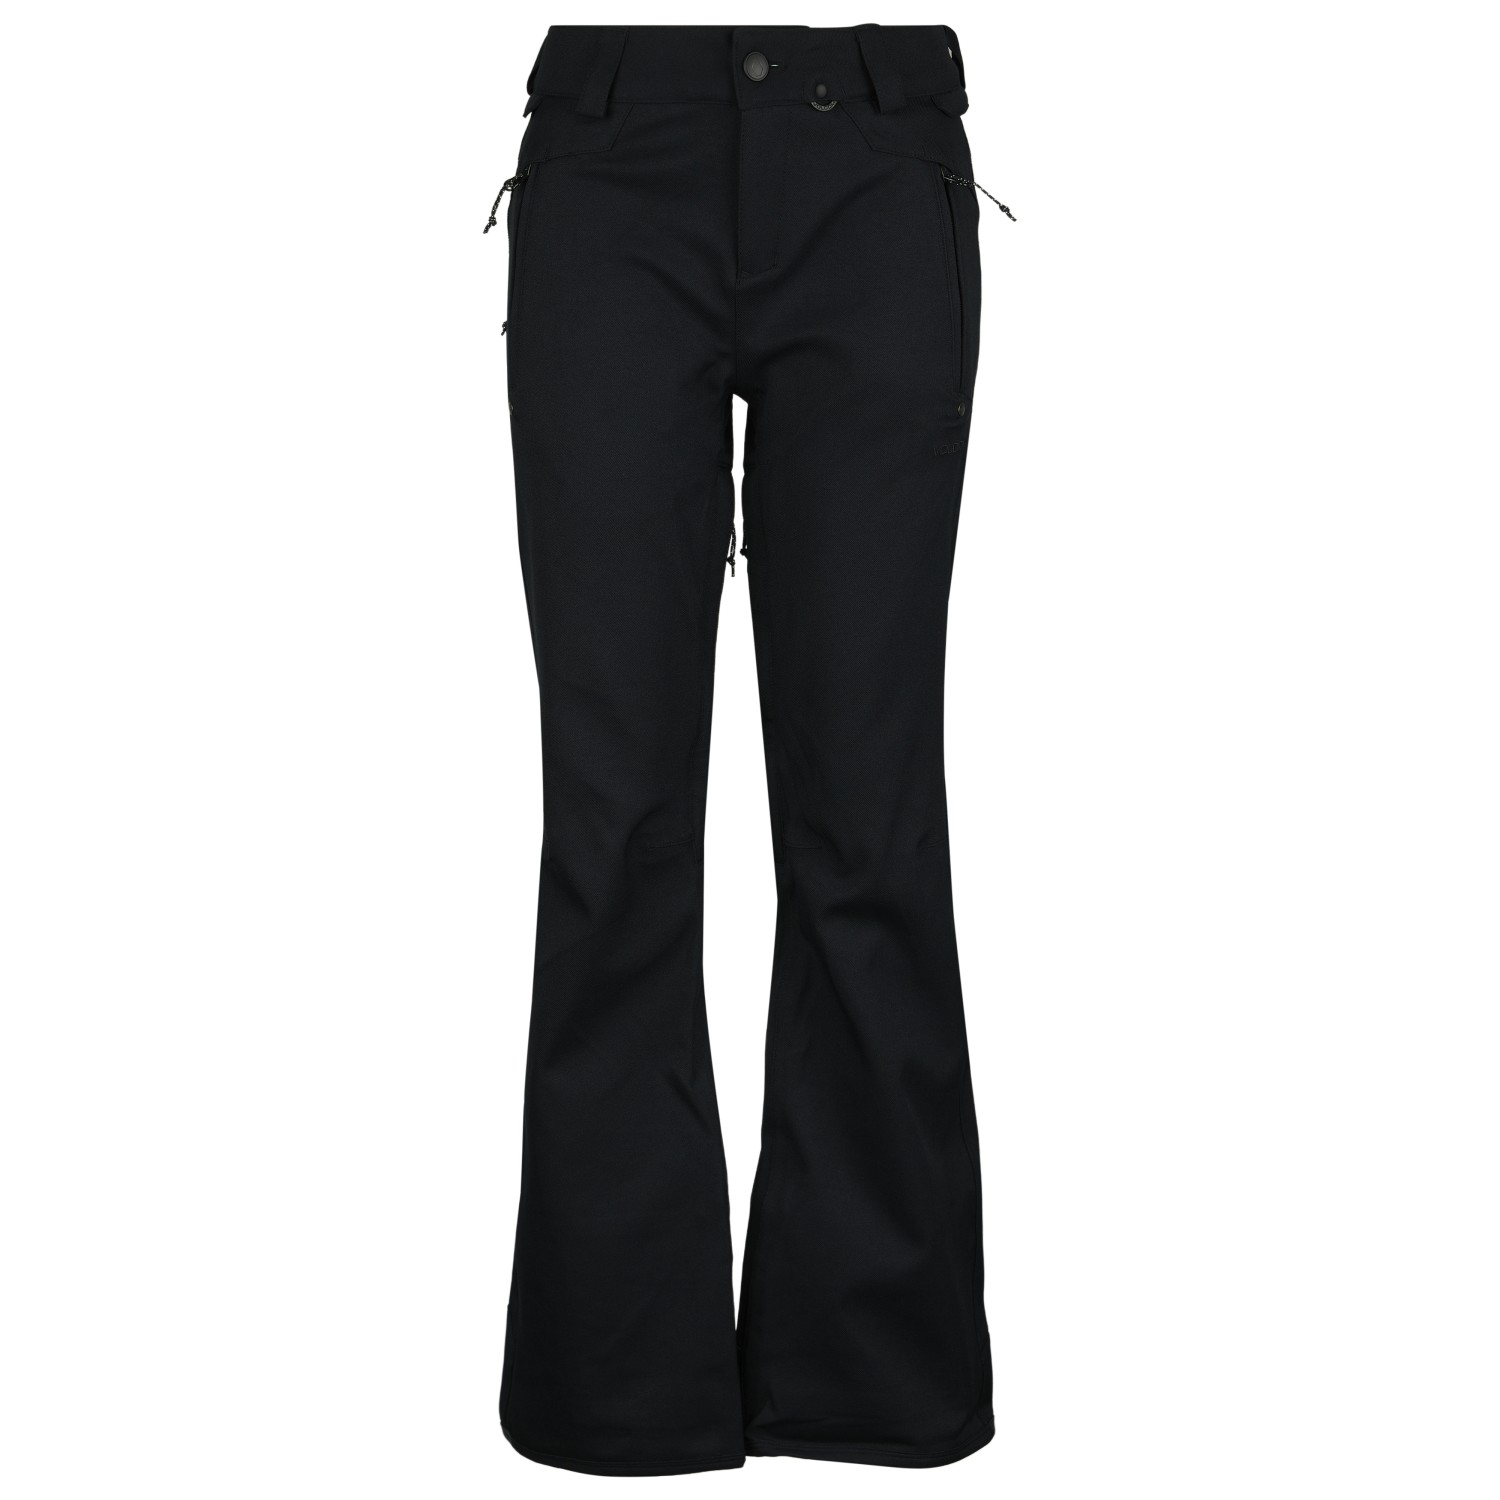 Лыжные штаны Volcom Women's Species Stretch Pant, цвет Black II брюки стретч species женские volcom цвет eucalyptus